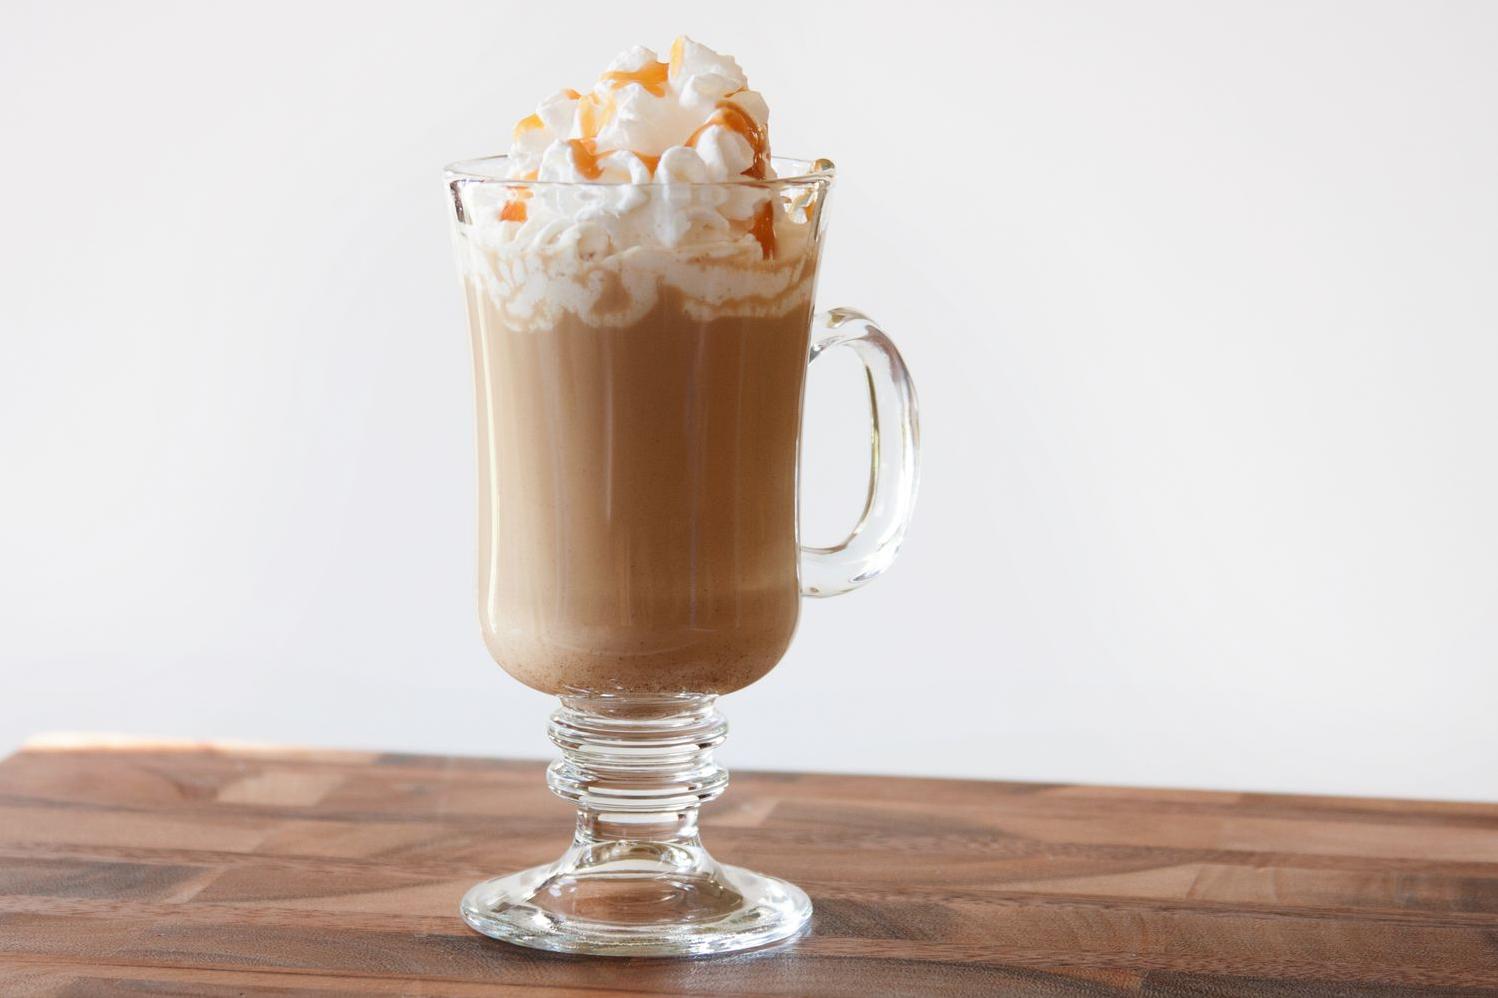  Start your day the Irish way with this Caramel Irish Cream Coffee!